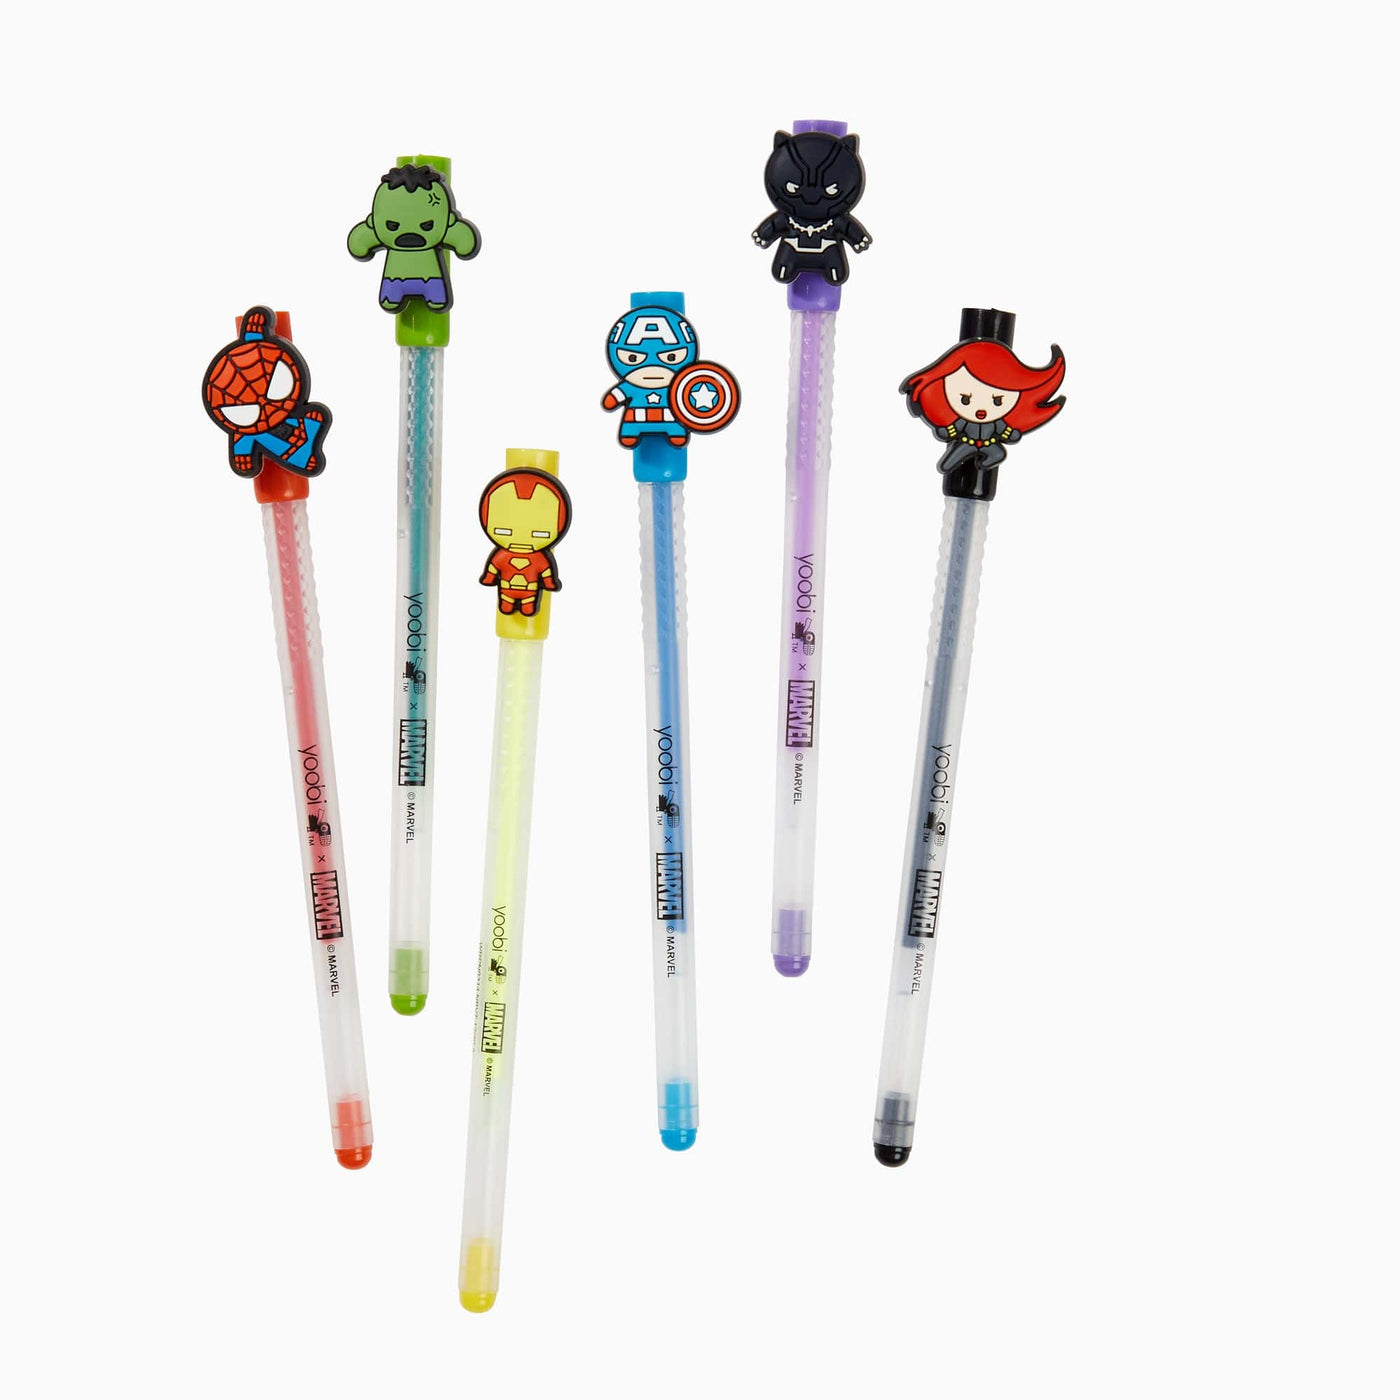 Yoobi Marvel Avengers 6-Pack Gel Pens with Charms